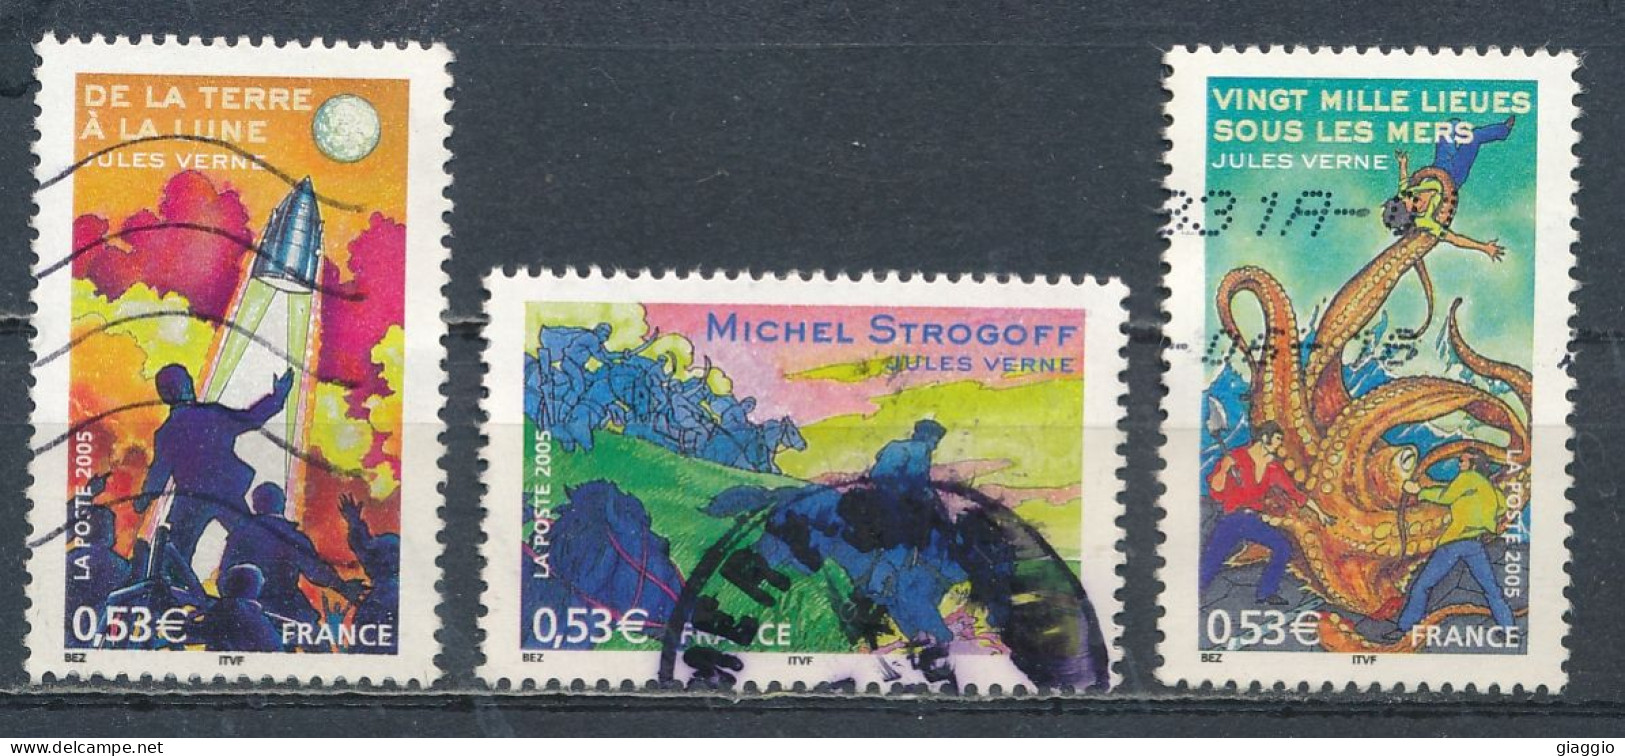 °°° FRANCE - Y&T N° 3790/94 - 2005 °°° - Used Stamps